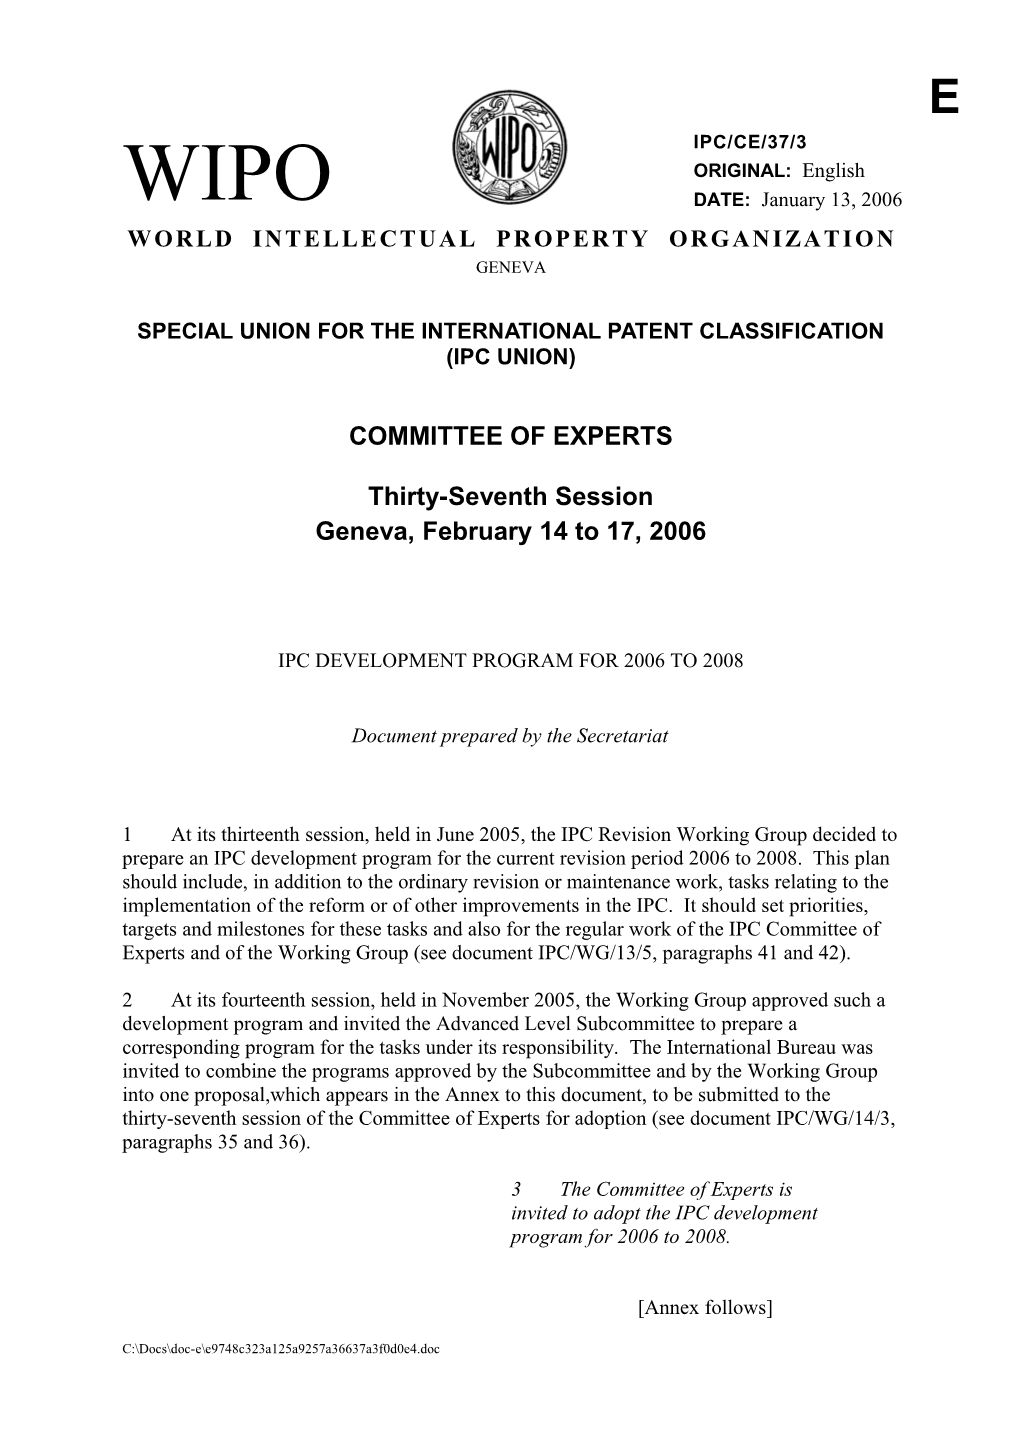 IPC/CE/37/3: IPC Development Program for 2006 to 2008